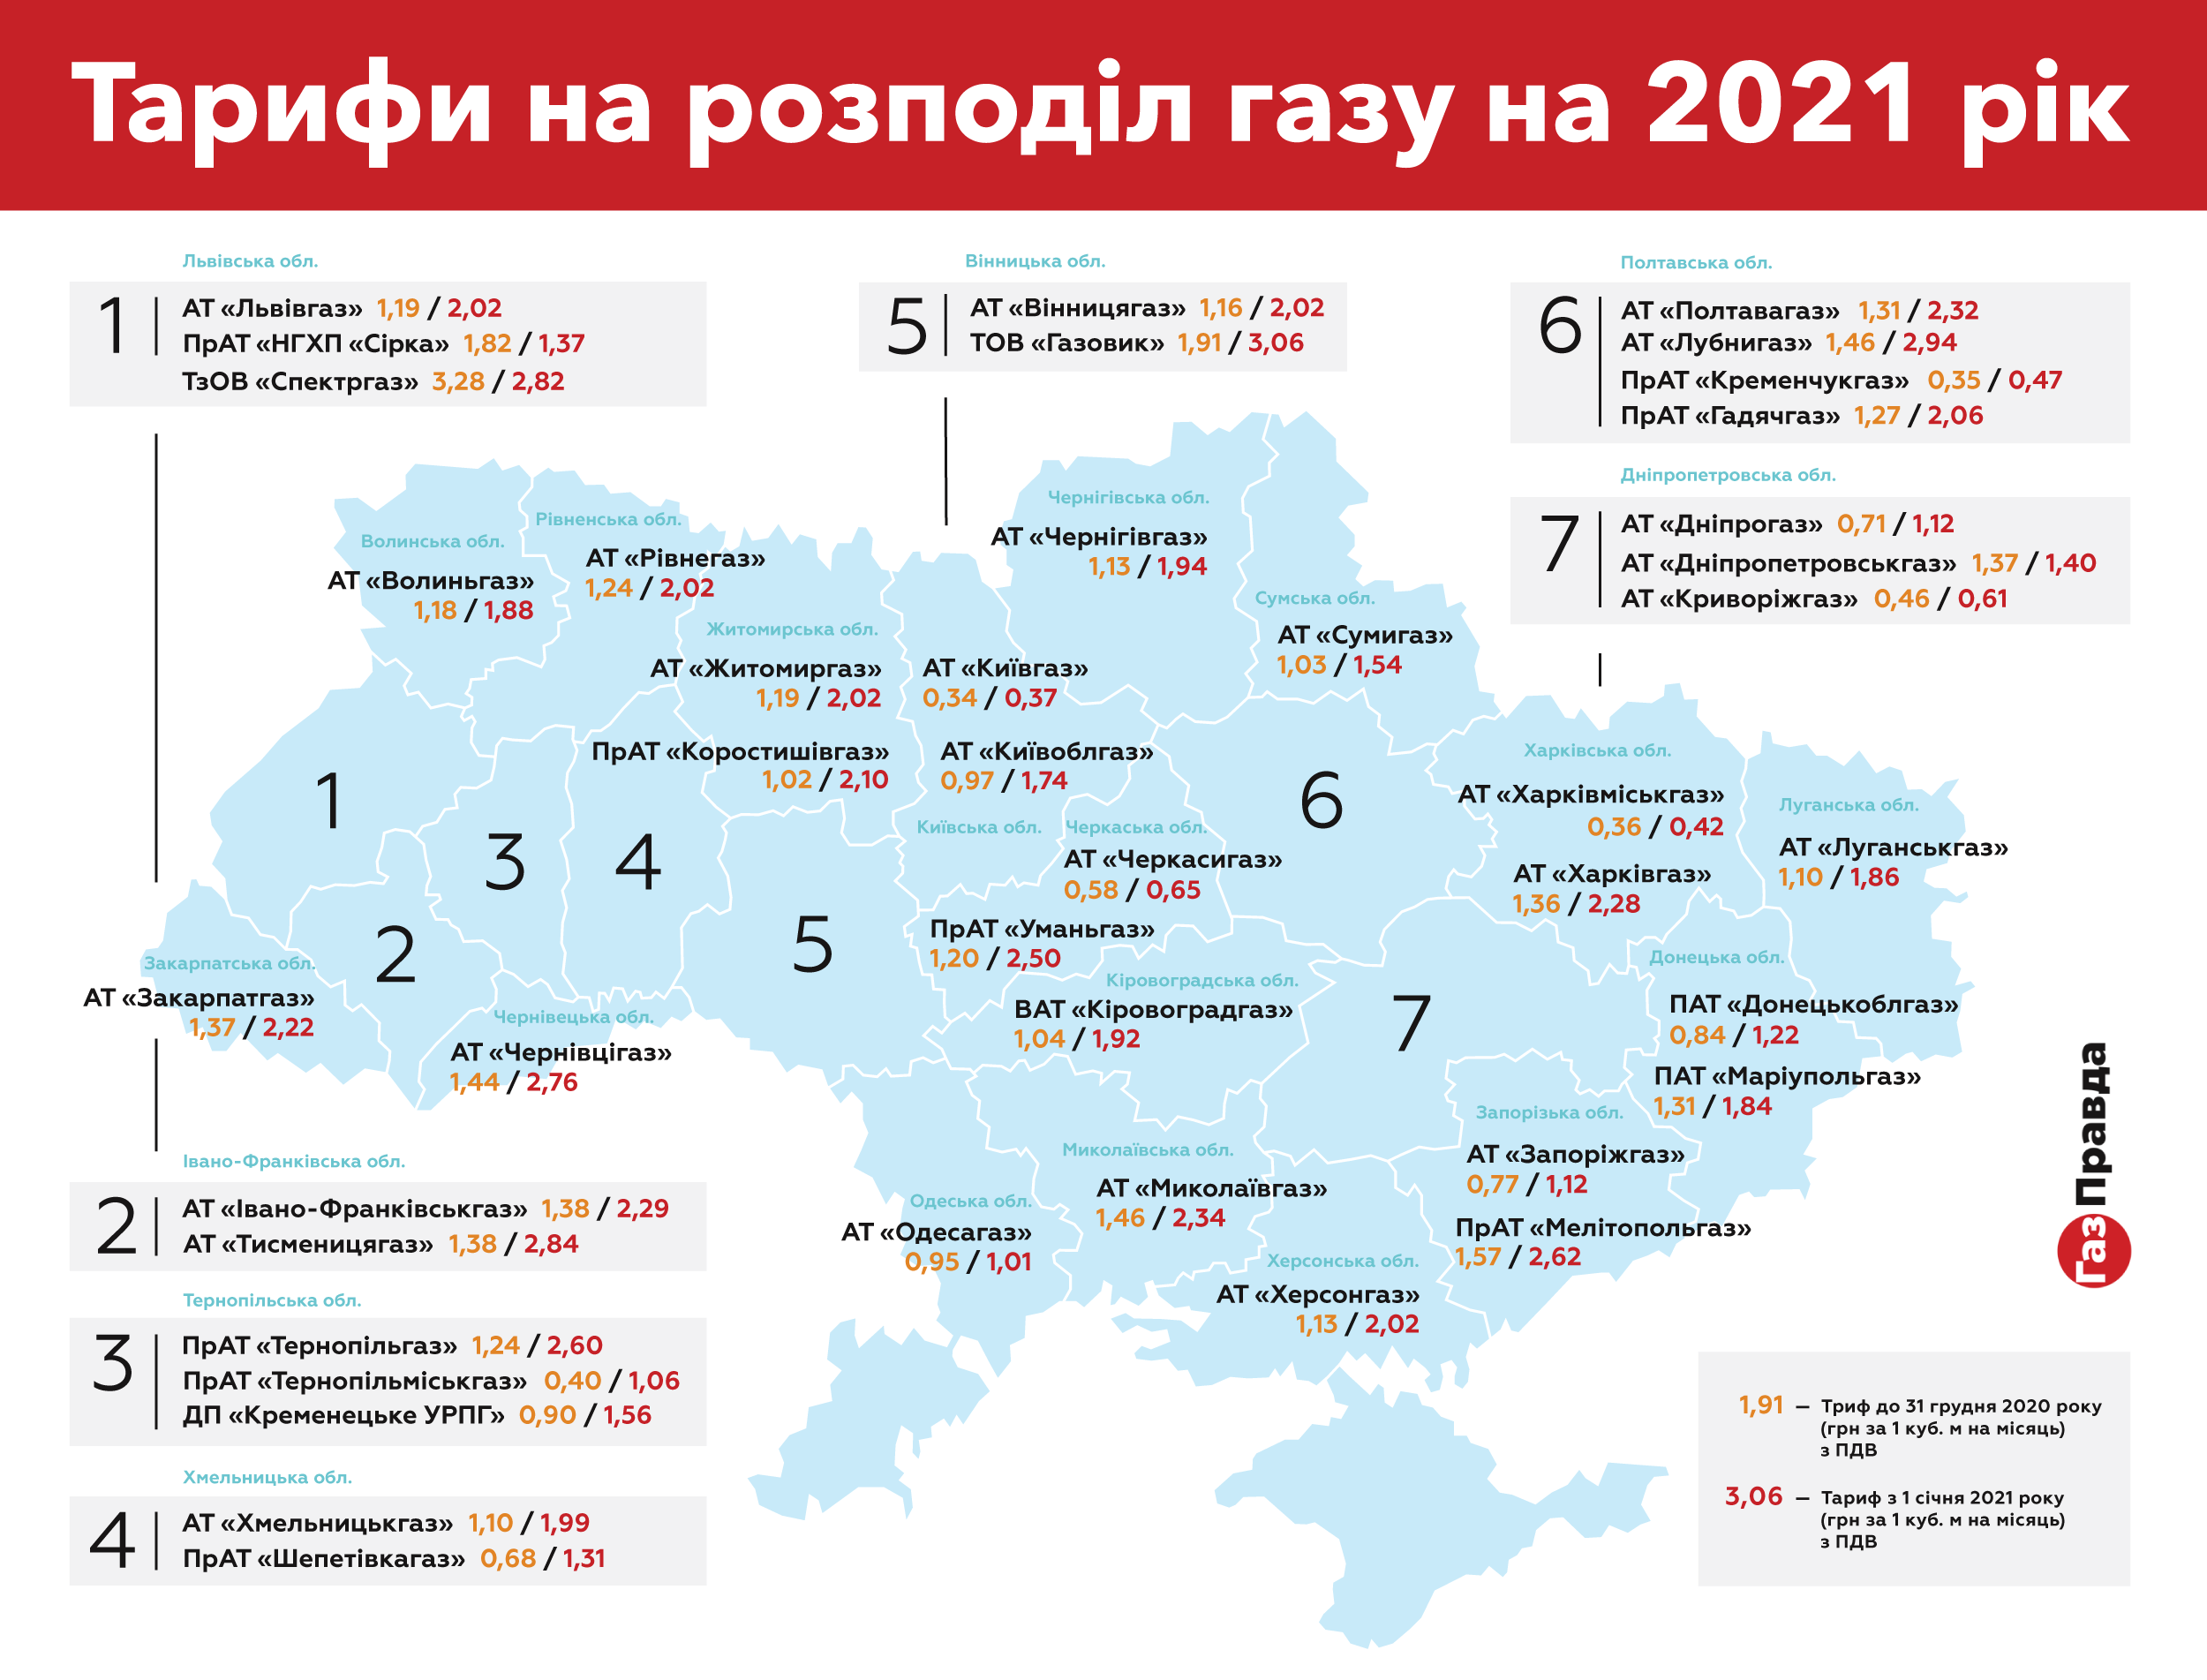 Тарифы на услуги распределения природного газа на 2021 года (стоимость указана с учетом НДС). Инфографика: gazpravda.com.ua